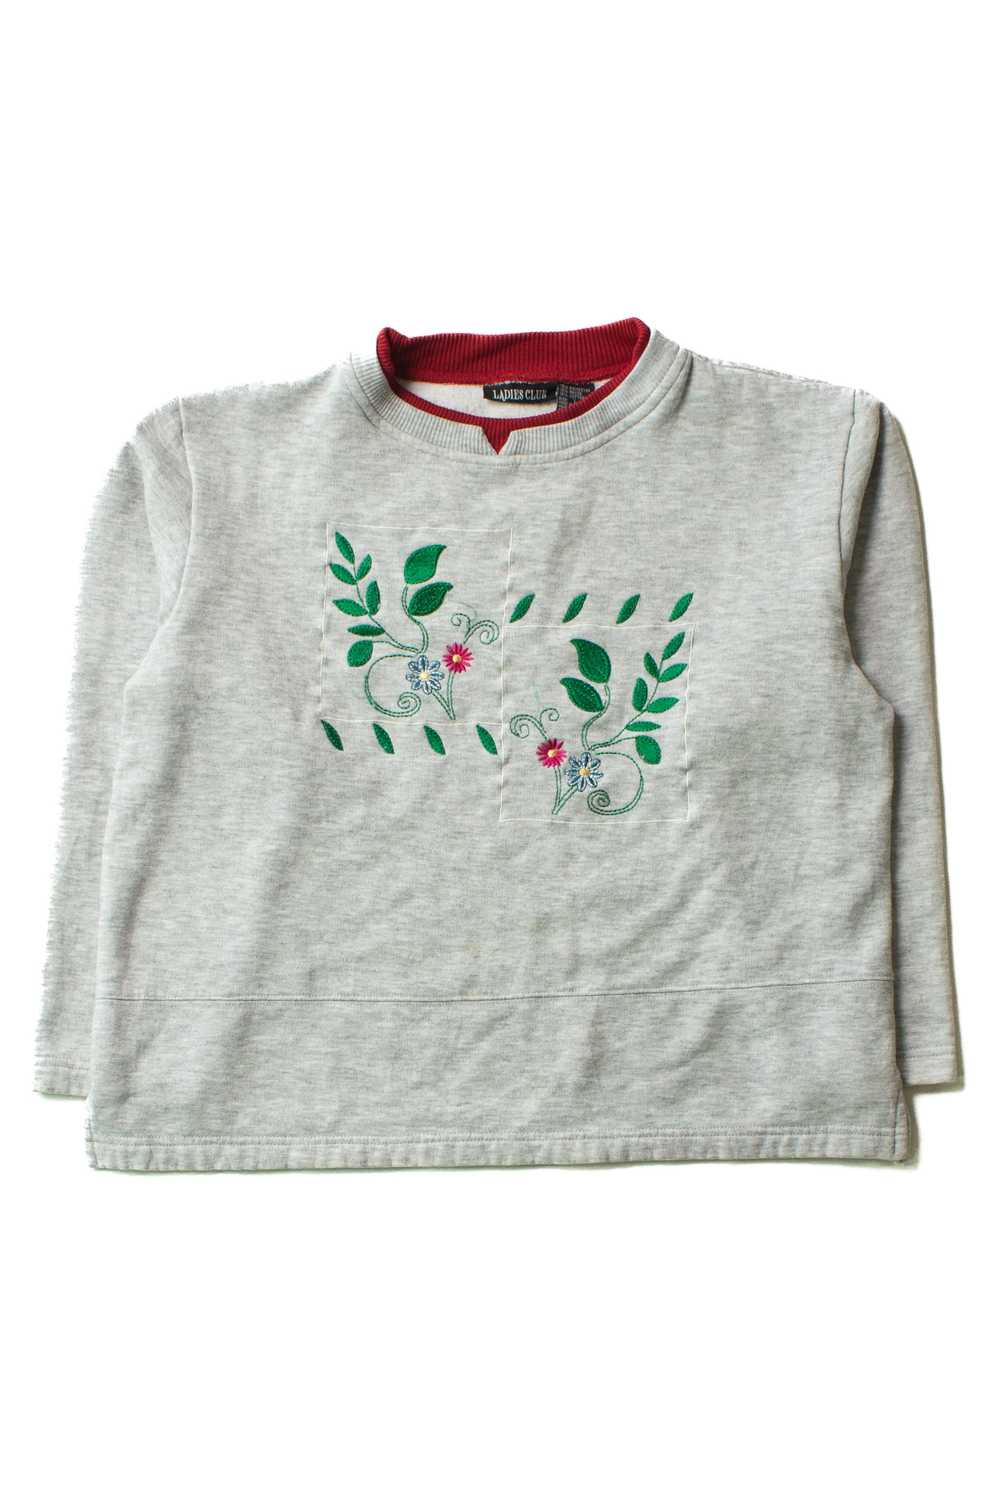 Vintage Embroidered Floral Squares Sweatshirt (19… - image 1